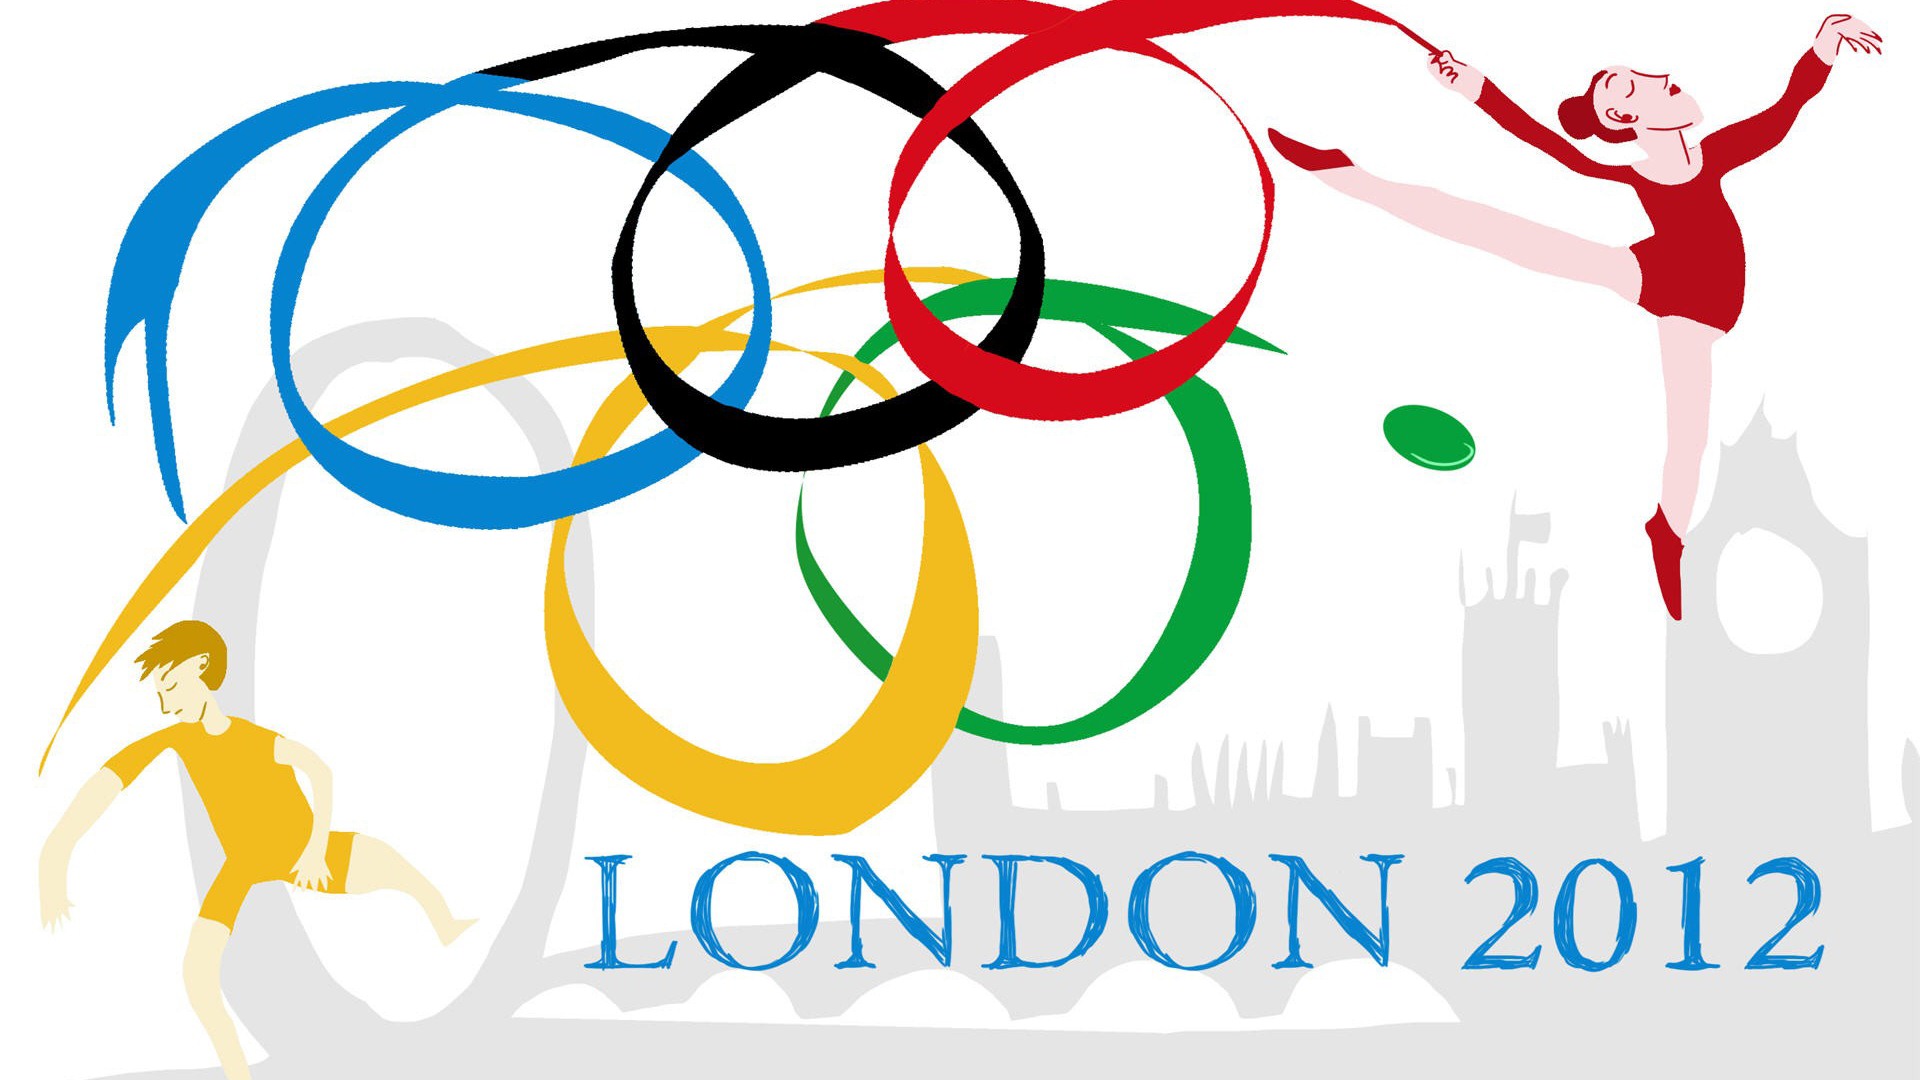 Londres 2012 Olimpiadas fondos temáticos (2) #16 - 1920x1080